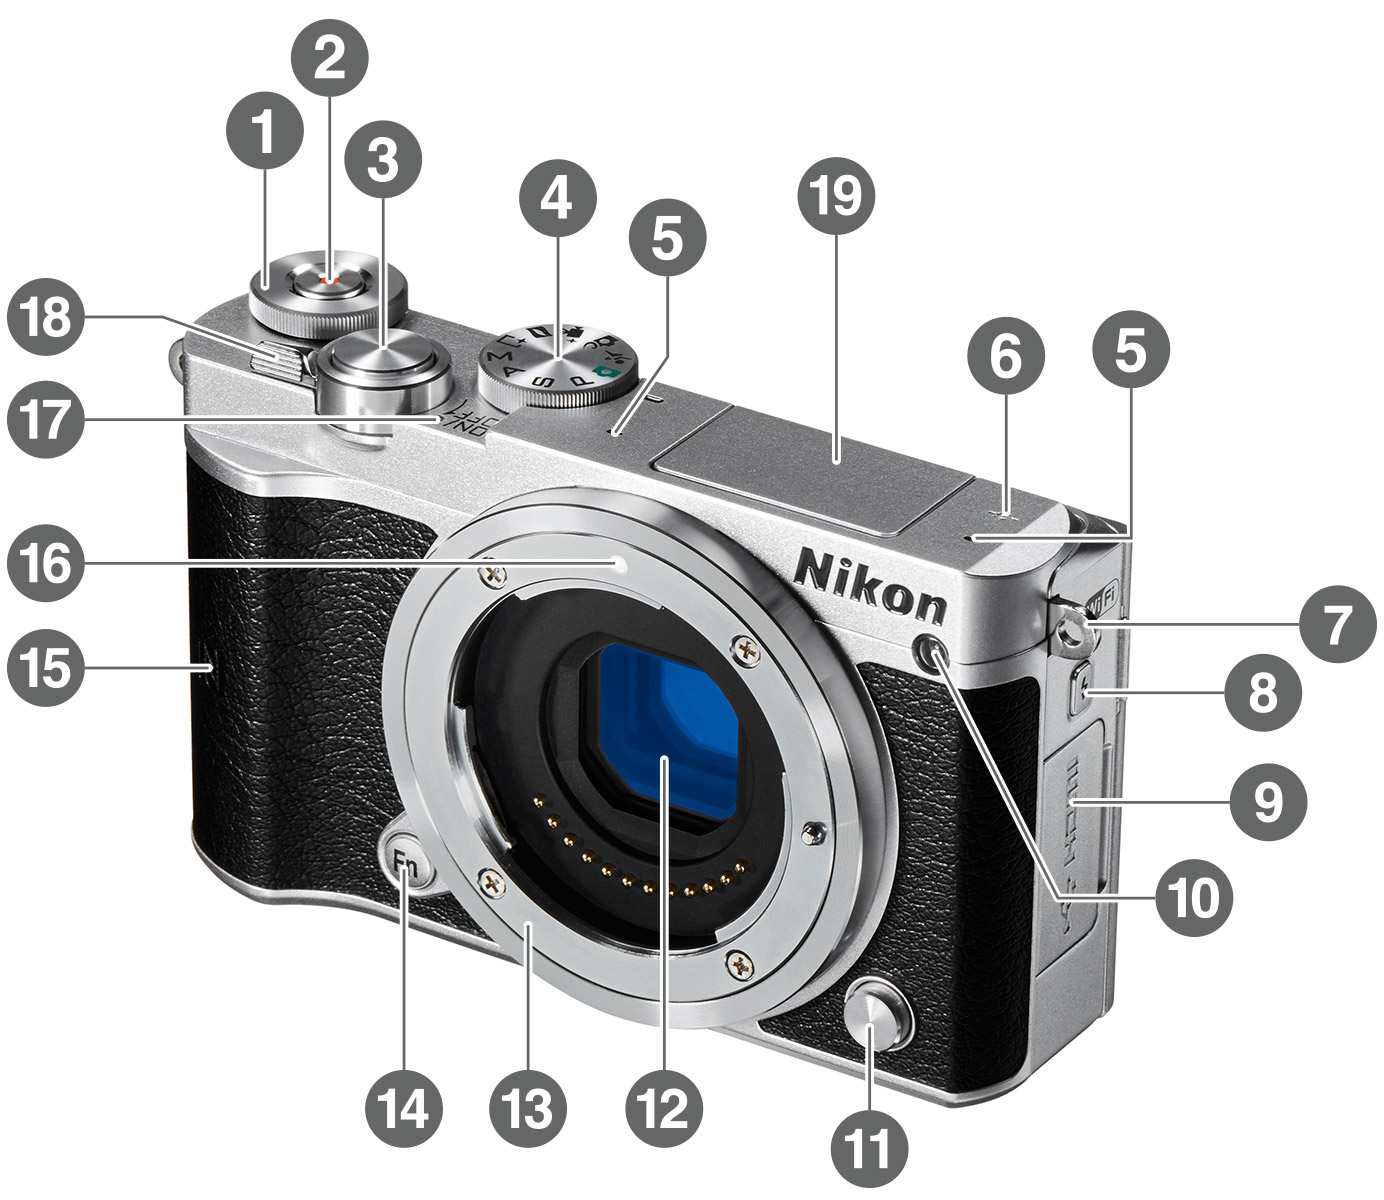 Nikon 1 J5 - 各部名称 | ミラーレスカメラ | ニコンイメージング